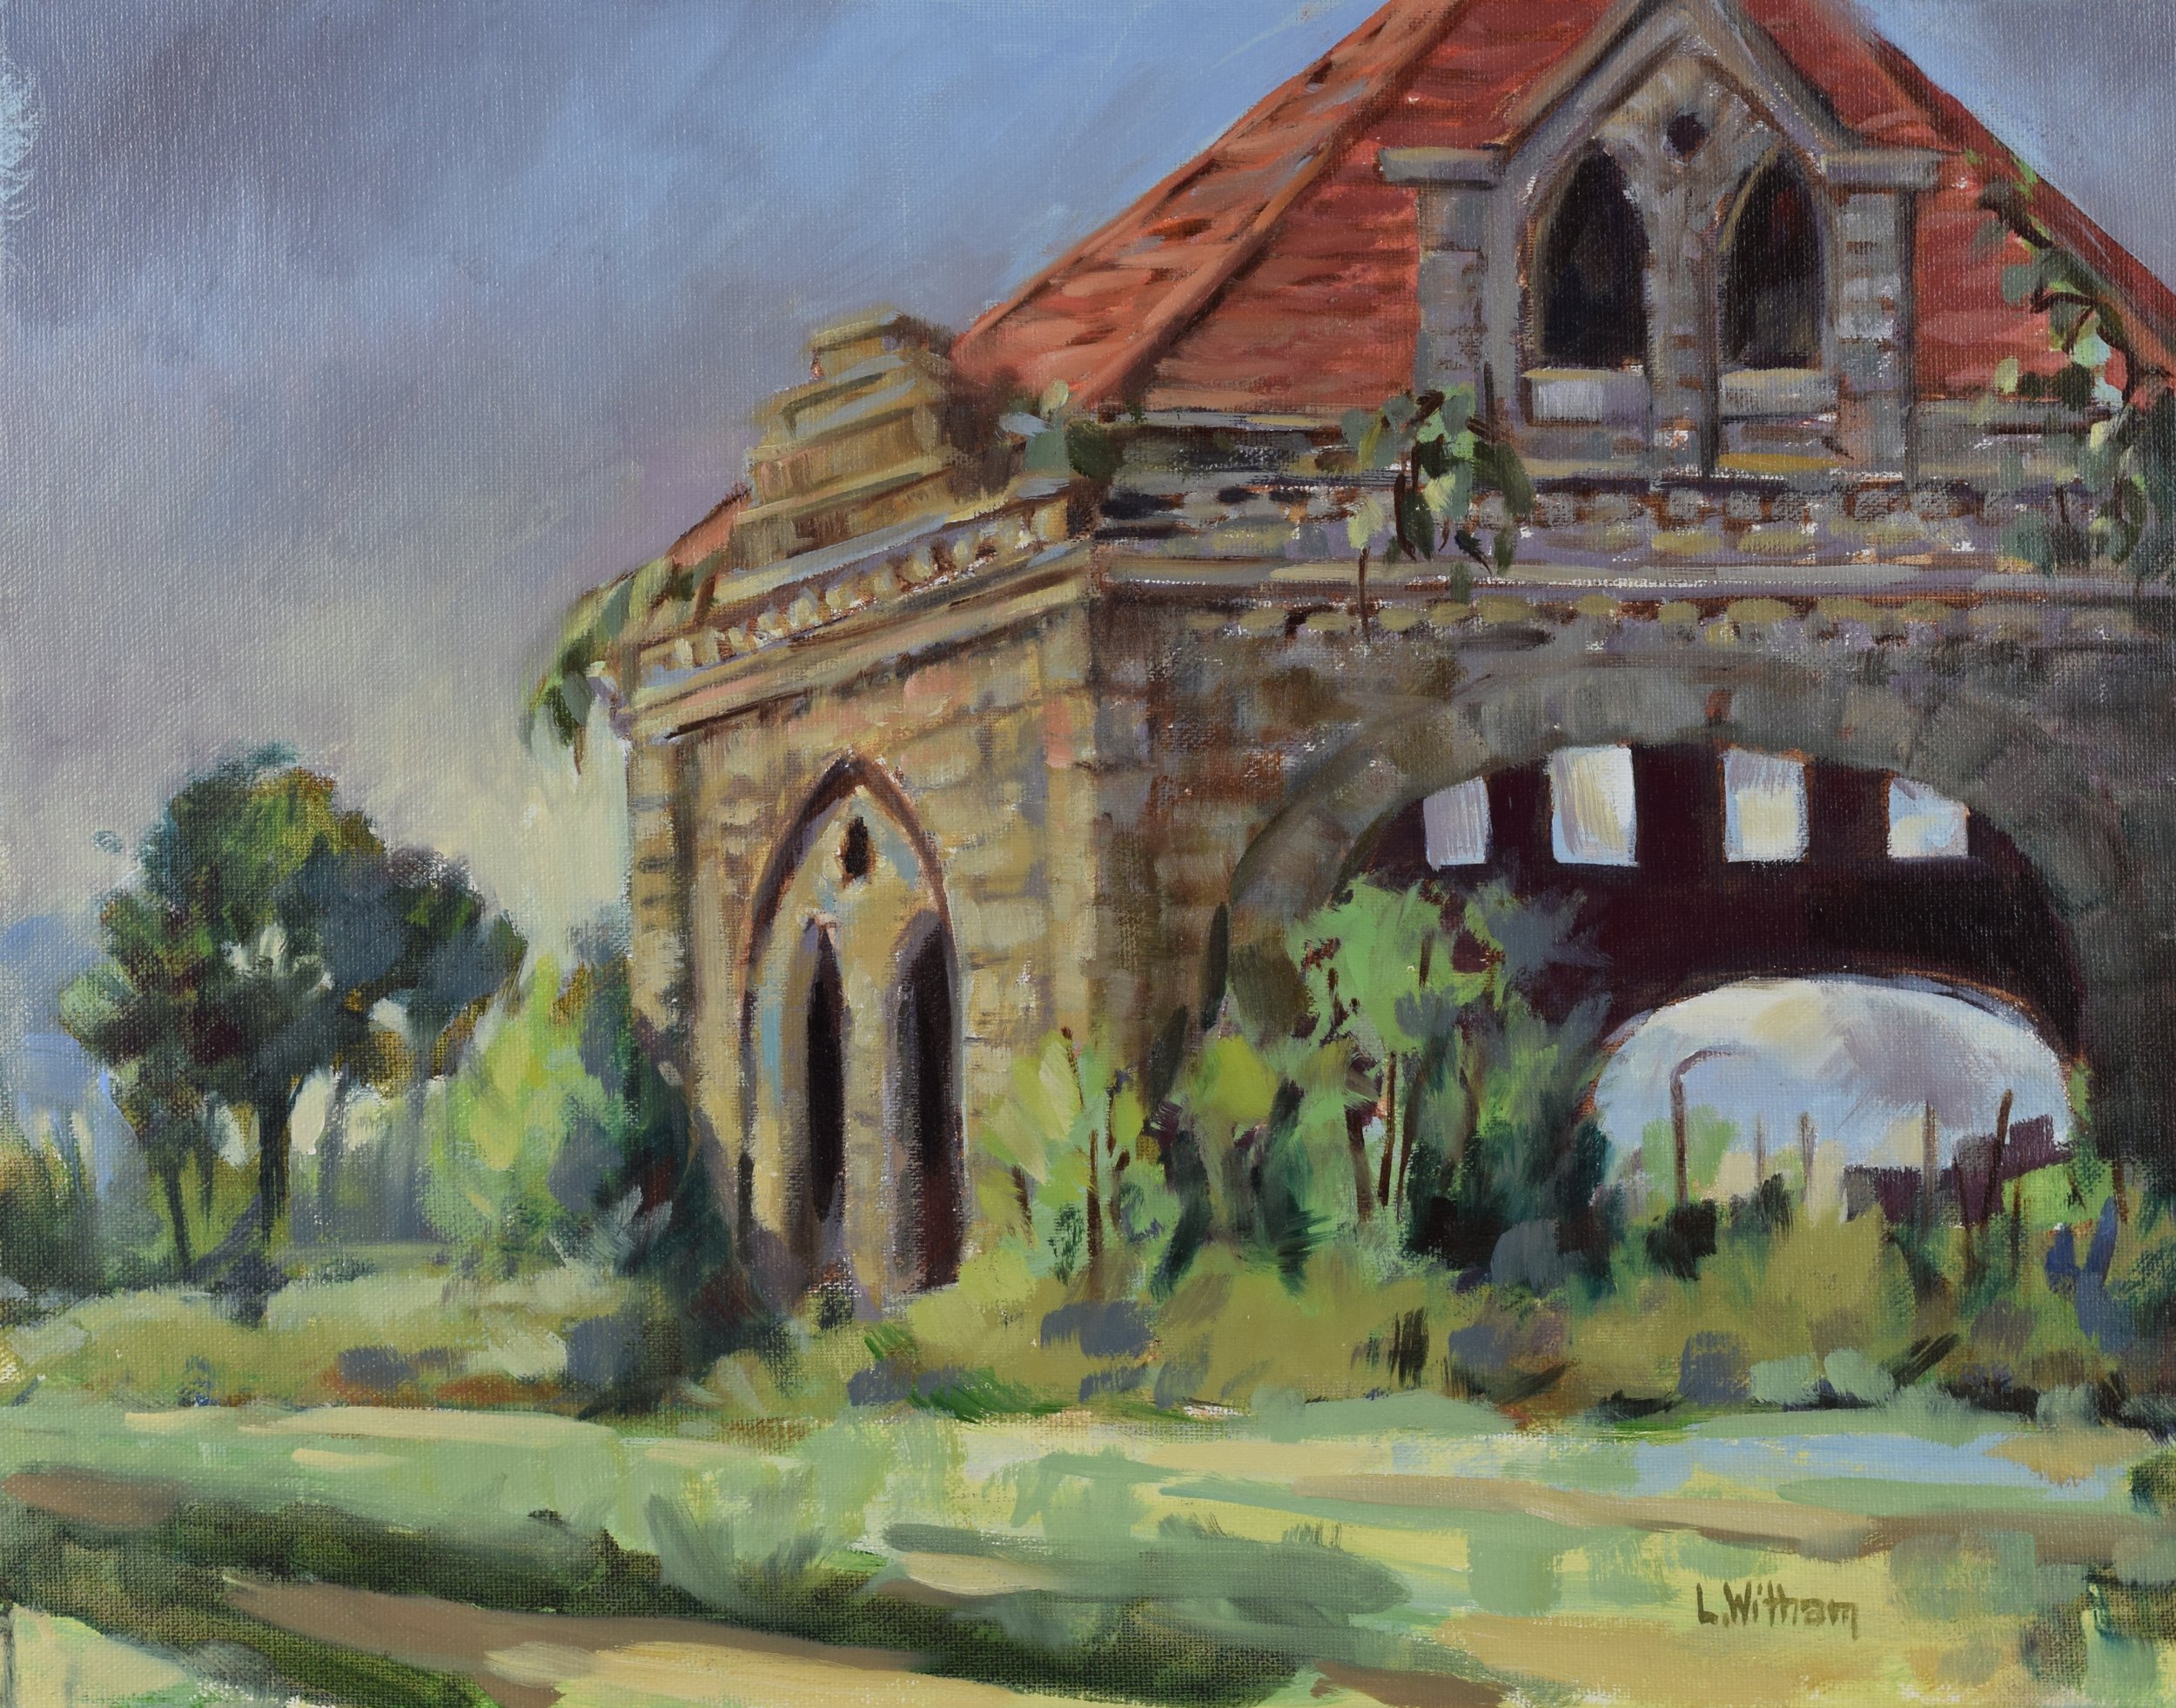 Clifton Gatehouse, Oil and acrylic on canvas, 11x14